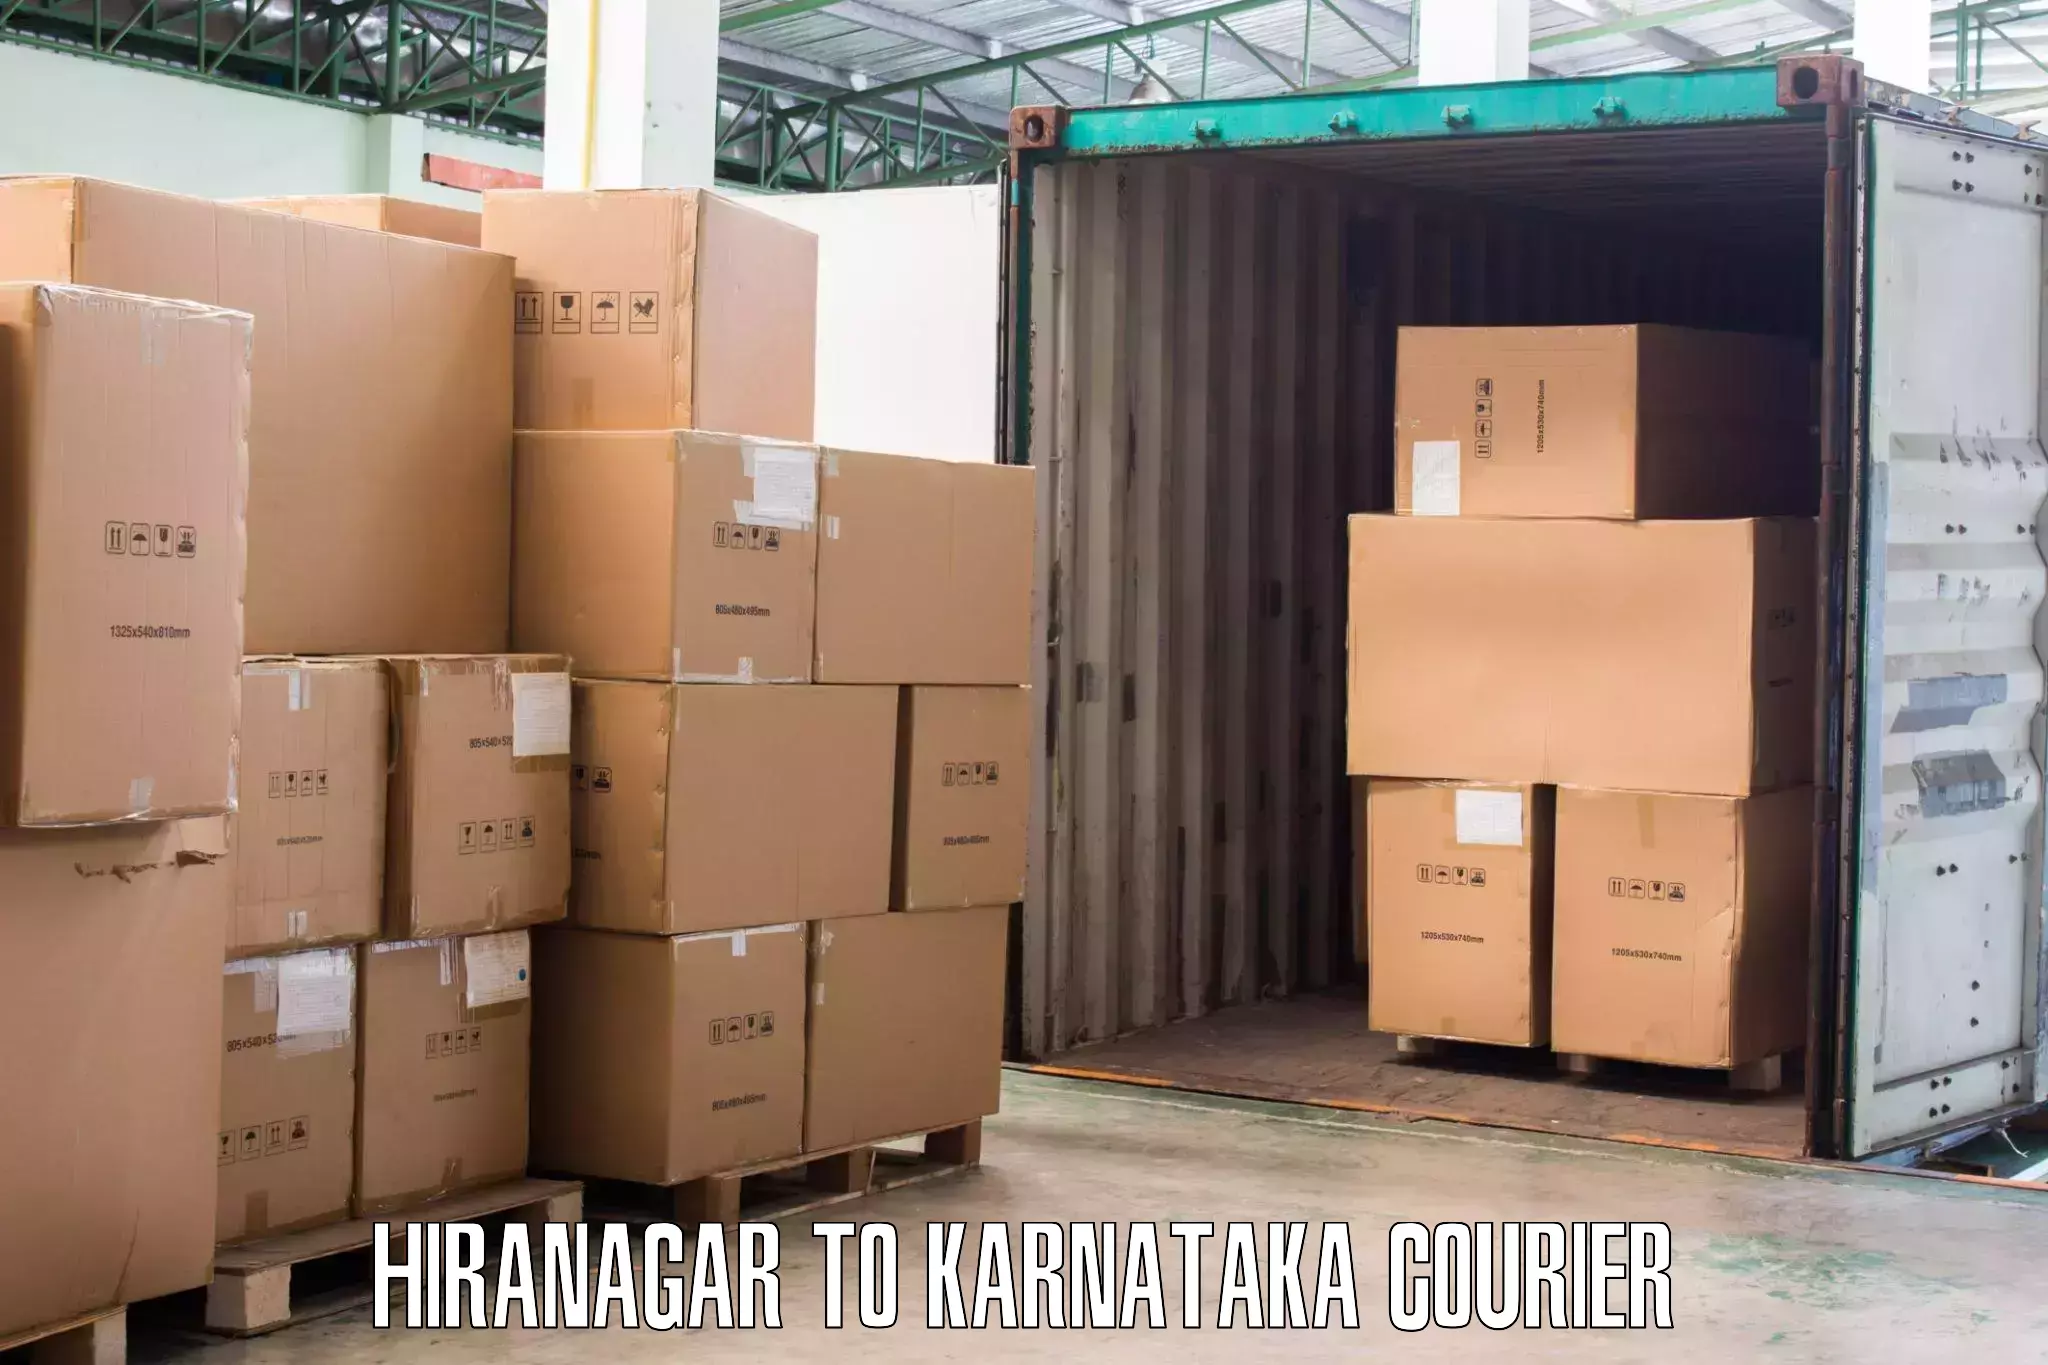 Reliable movers Hiranagar to Karnataka